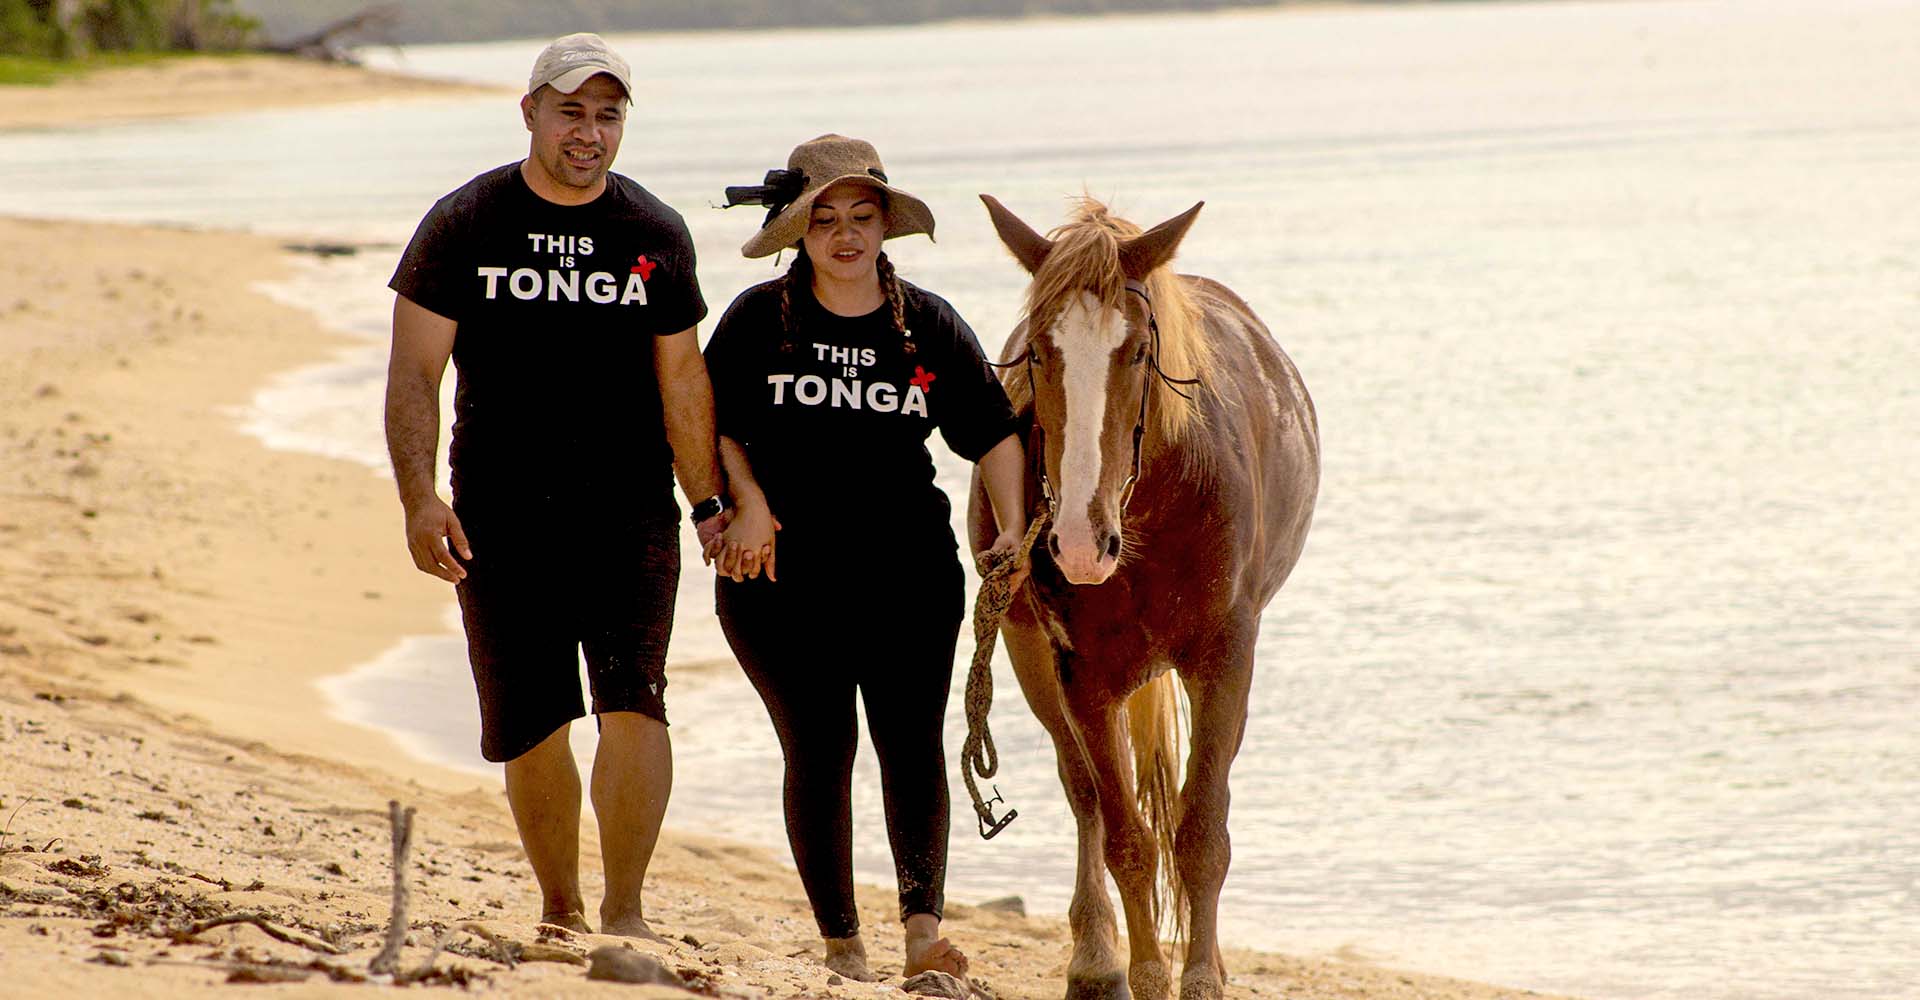 People of Tonga